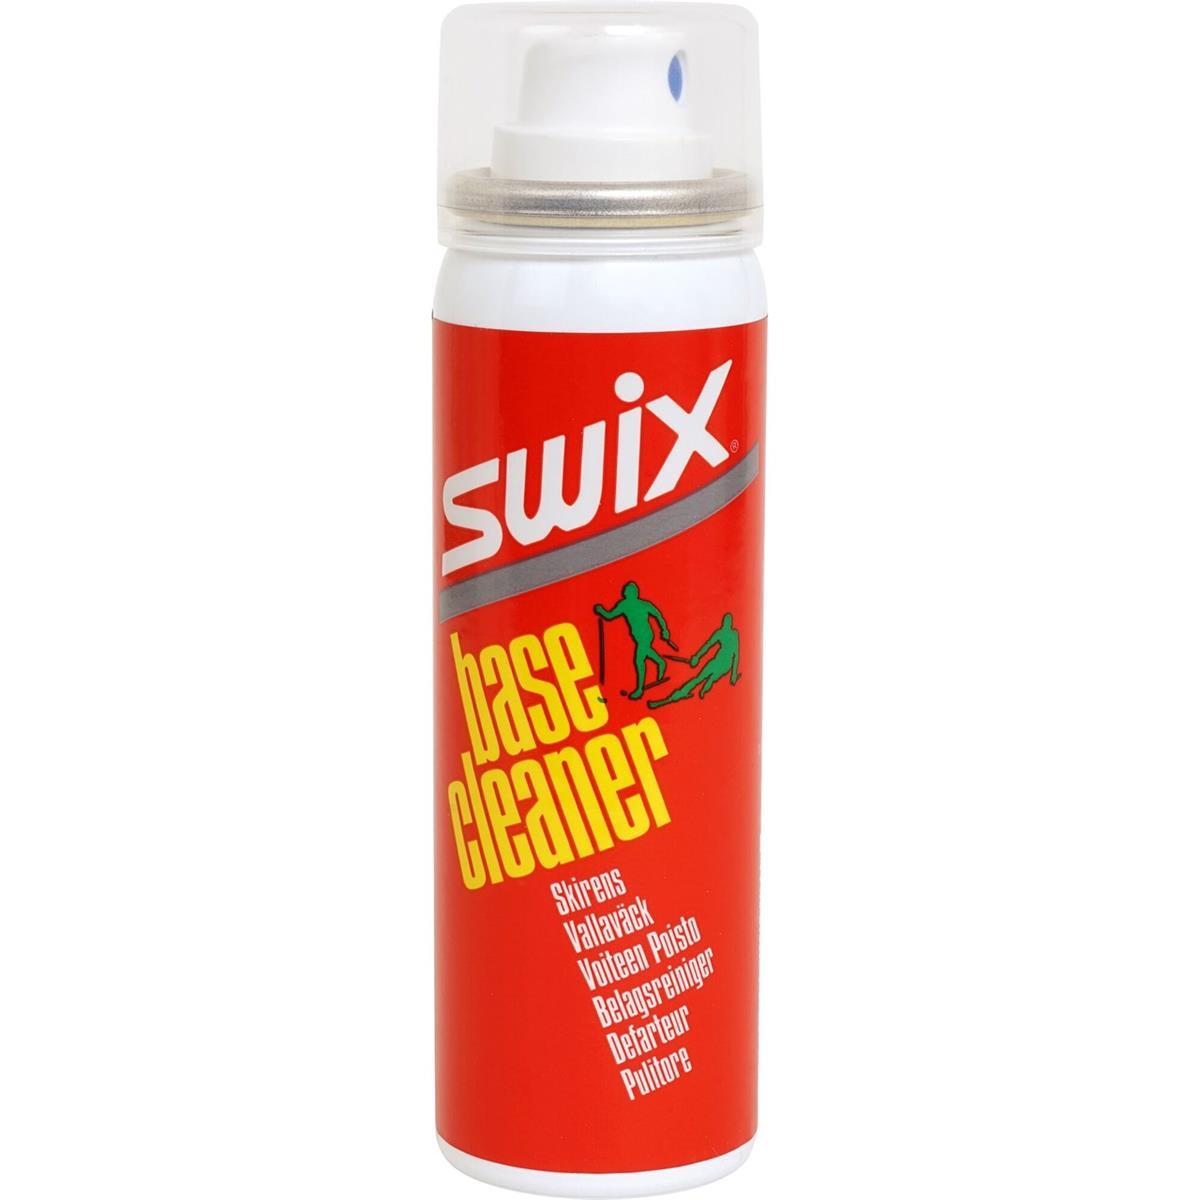 Swix I61C Base Cleaner aerosol 70 ml